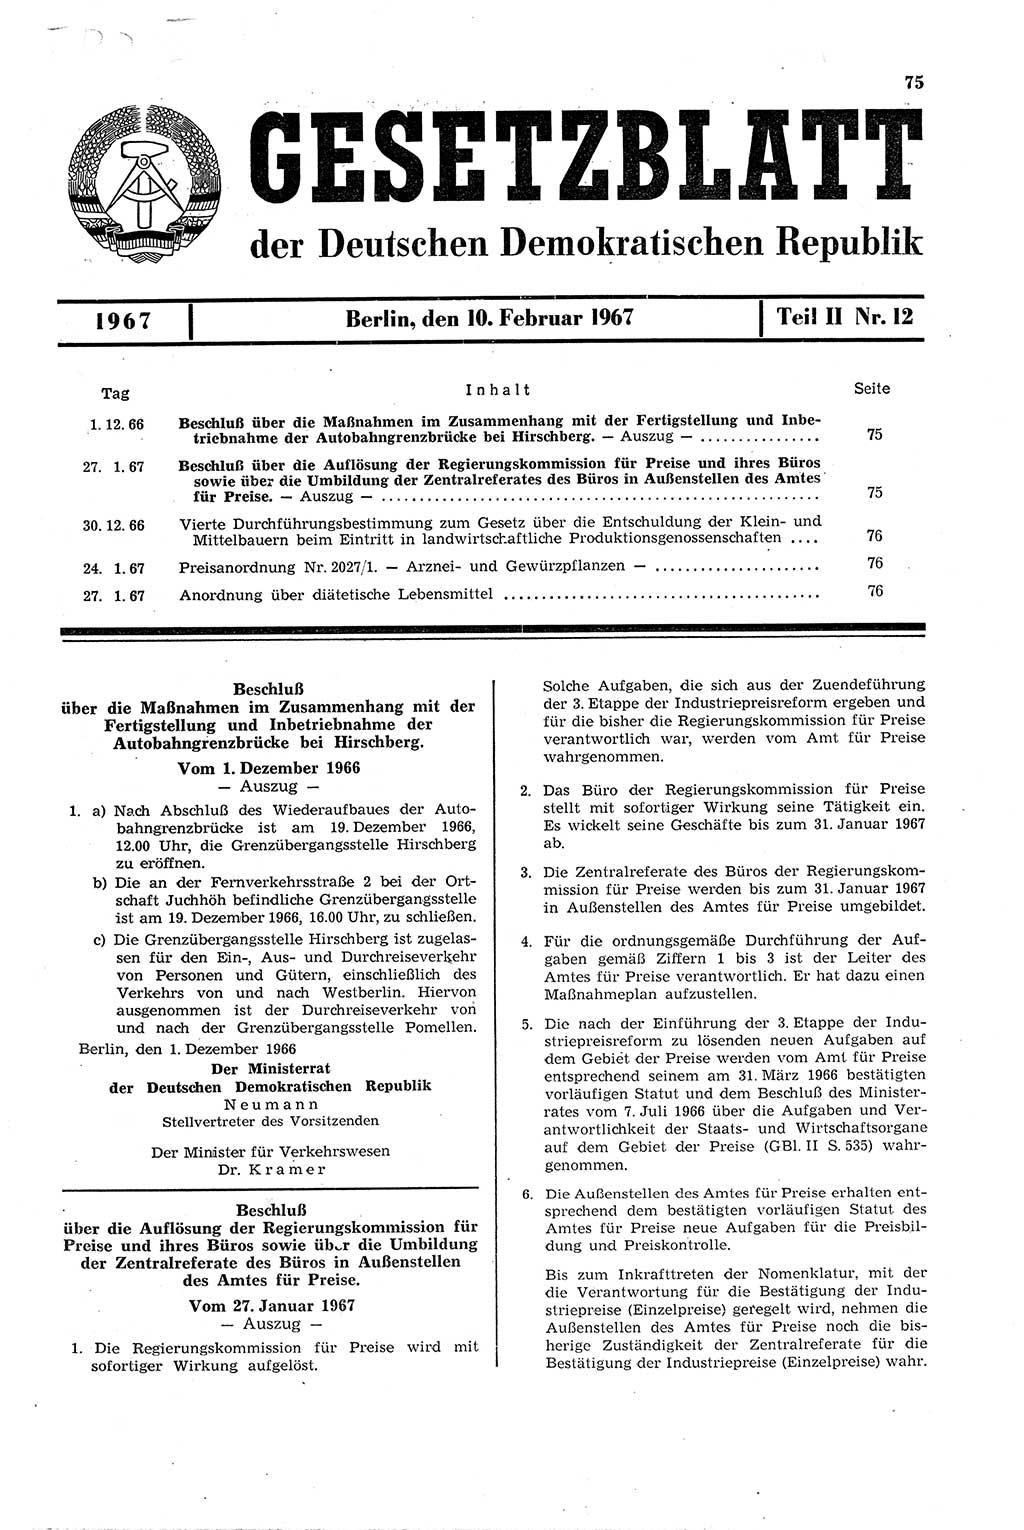 Gesetzblatt (GBl.) der Deutschen Demokratischen Republik (DDR) Teil ⅠⅠ 1967, Seite 75 (GBl. DDR ⅠⅠ 1967, S. 75)